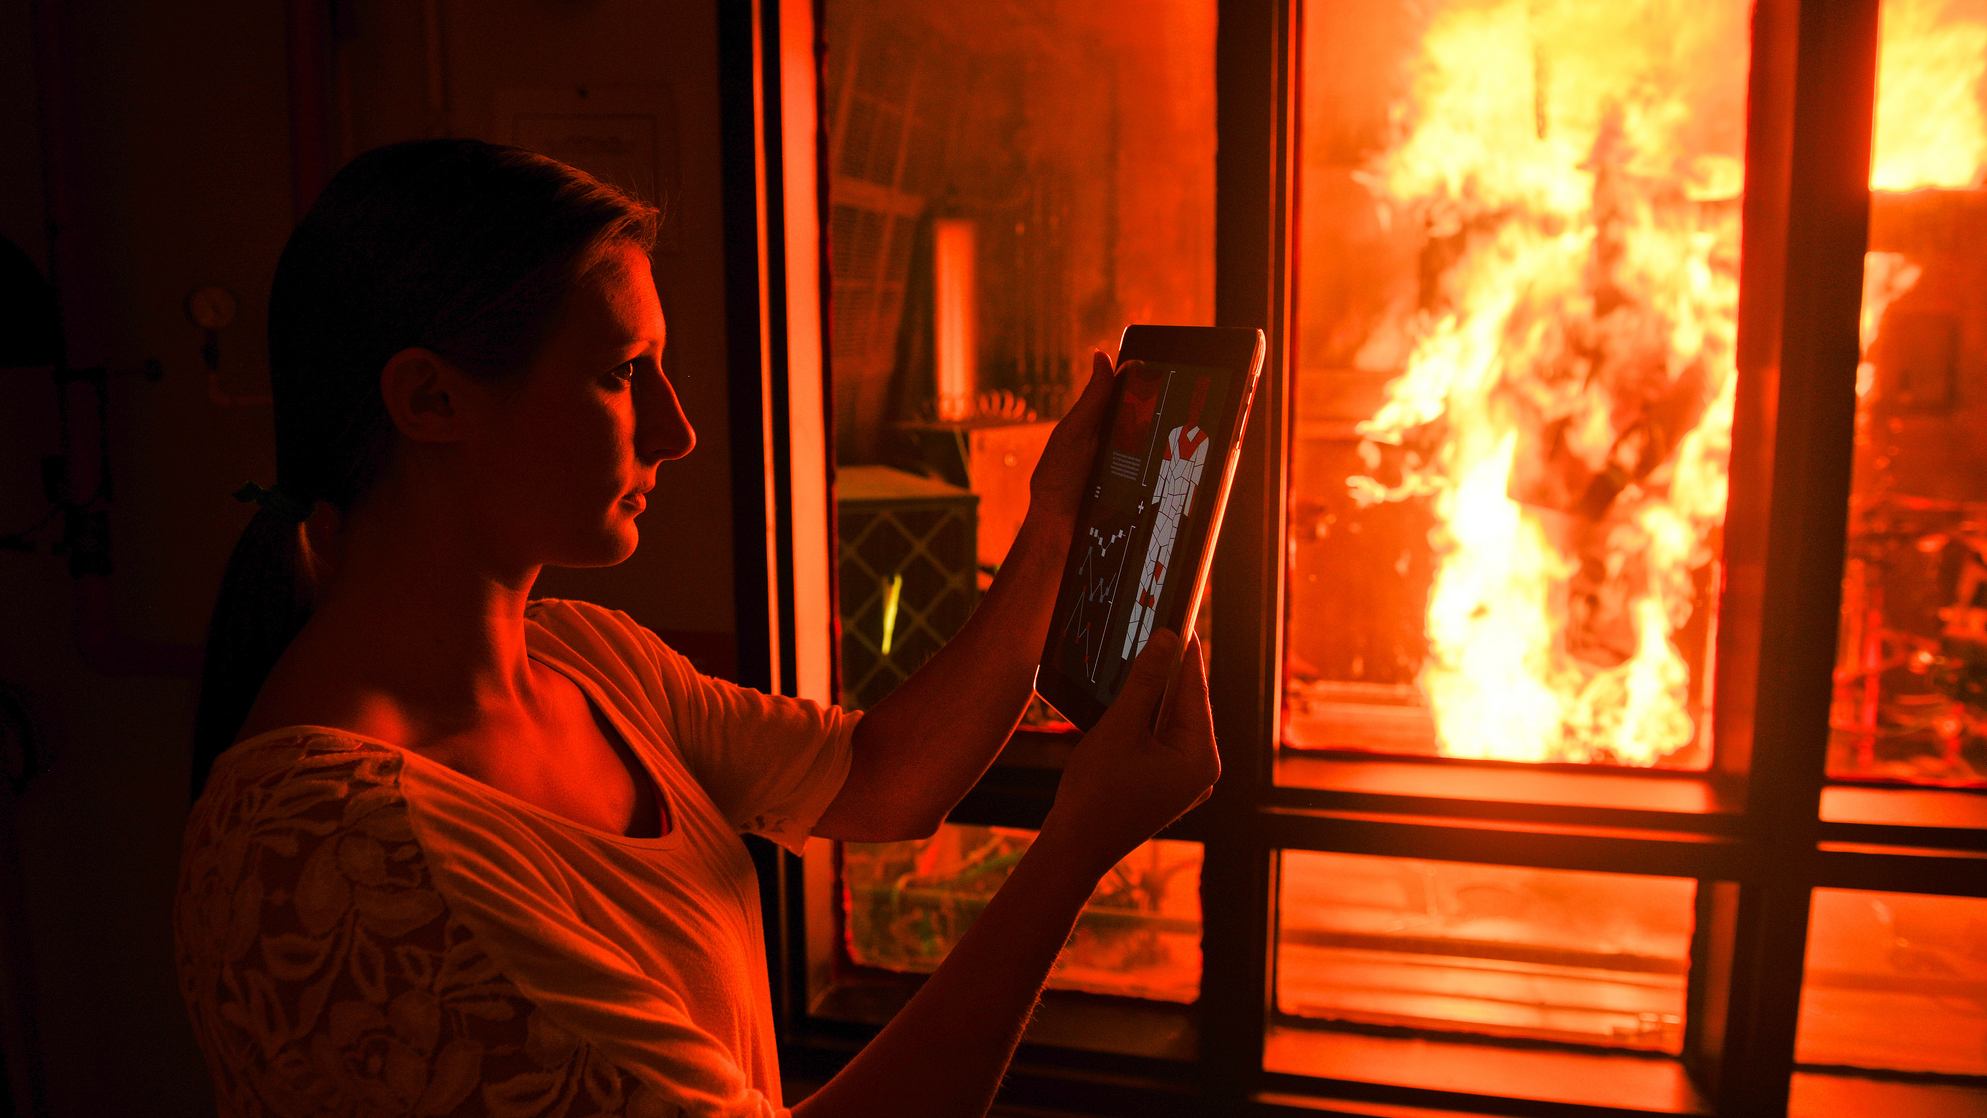 一个研究人员在iPad上查看结果，而PyroMan人体模型在一个玻璃房间里燃烧着